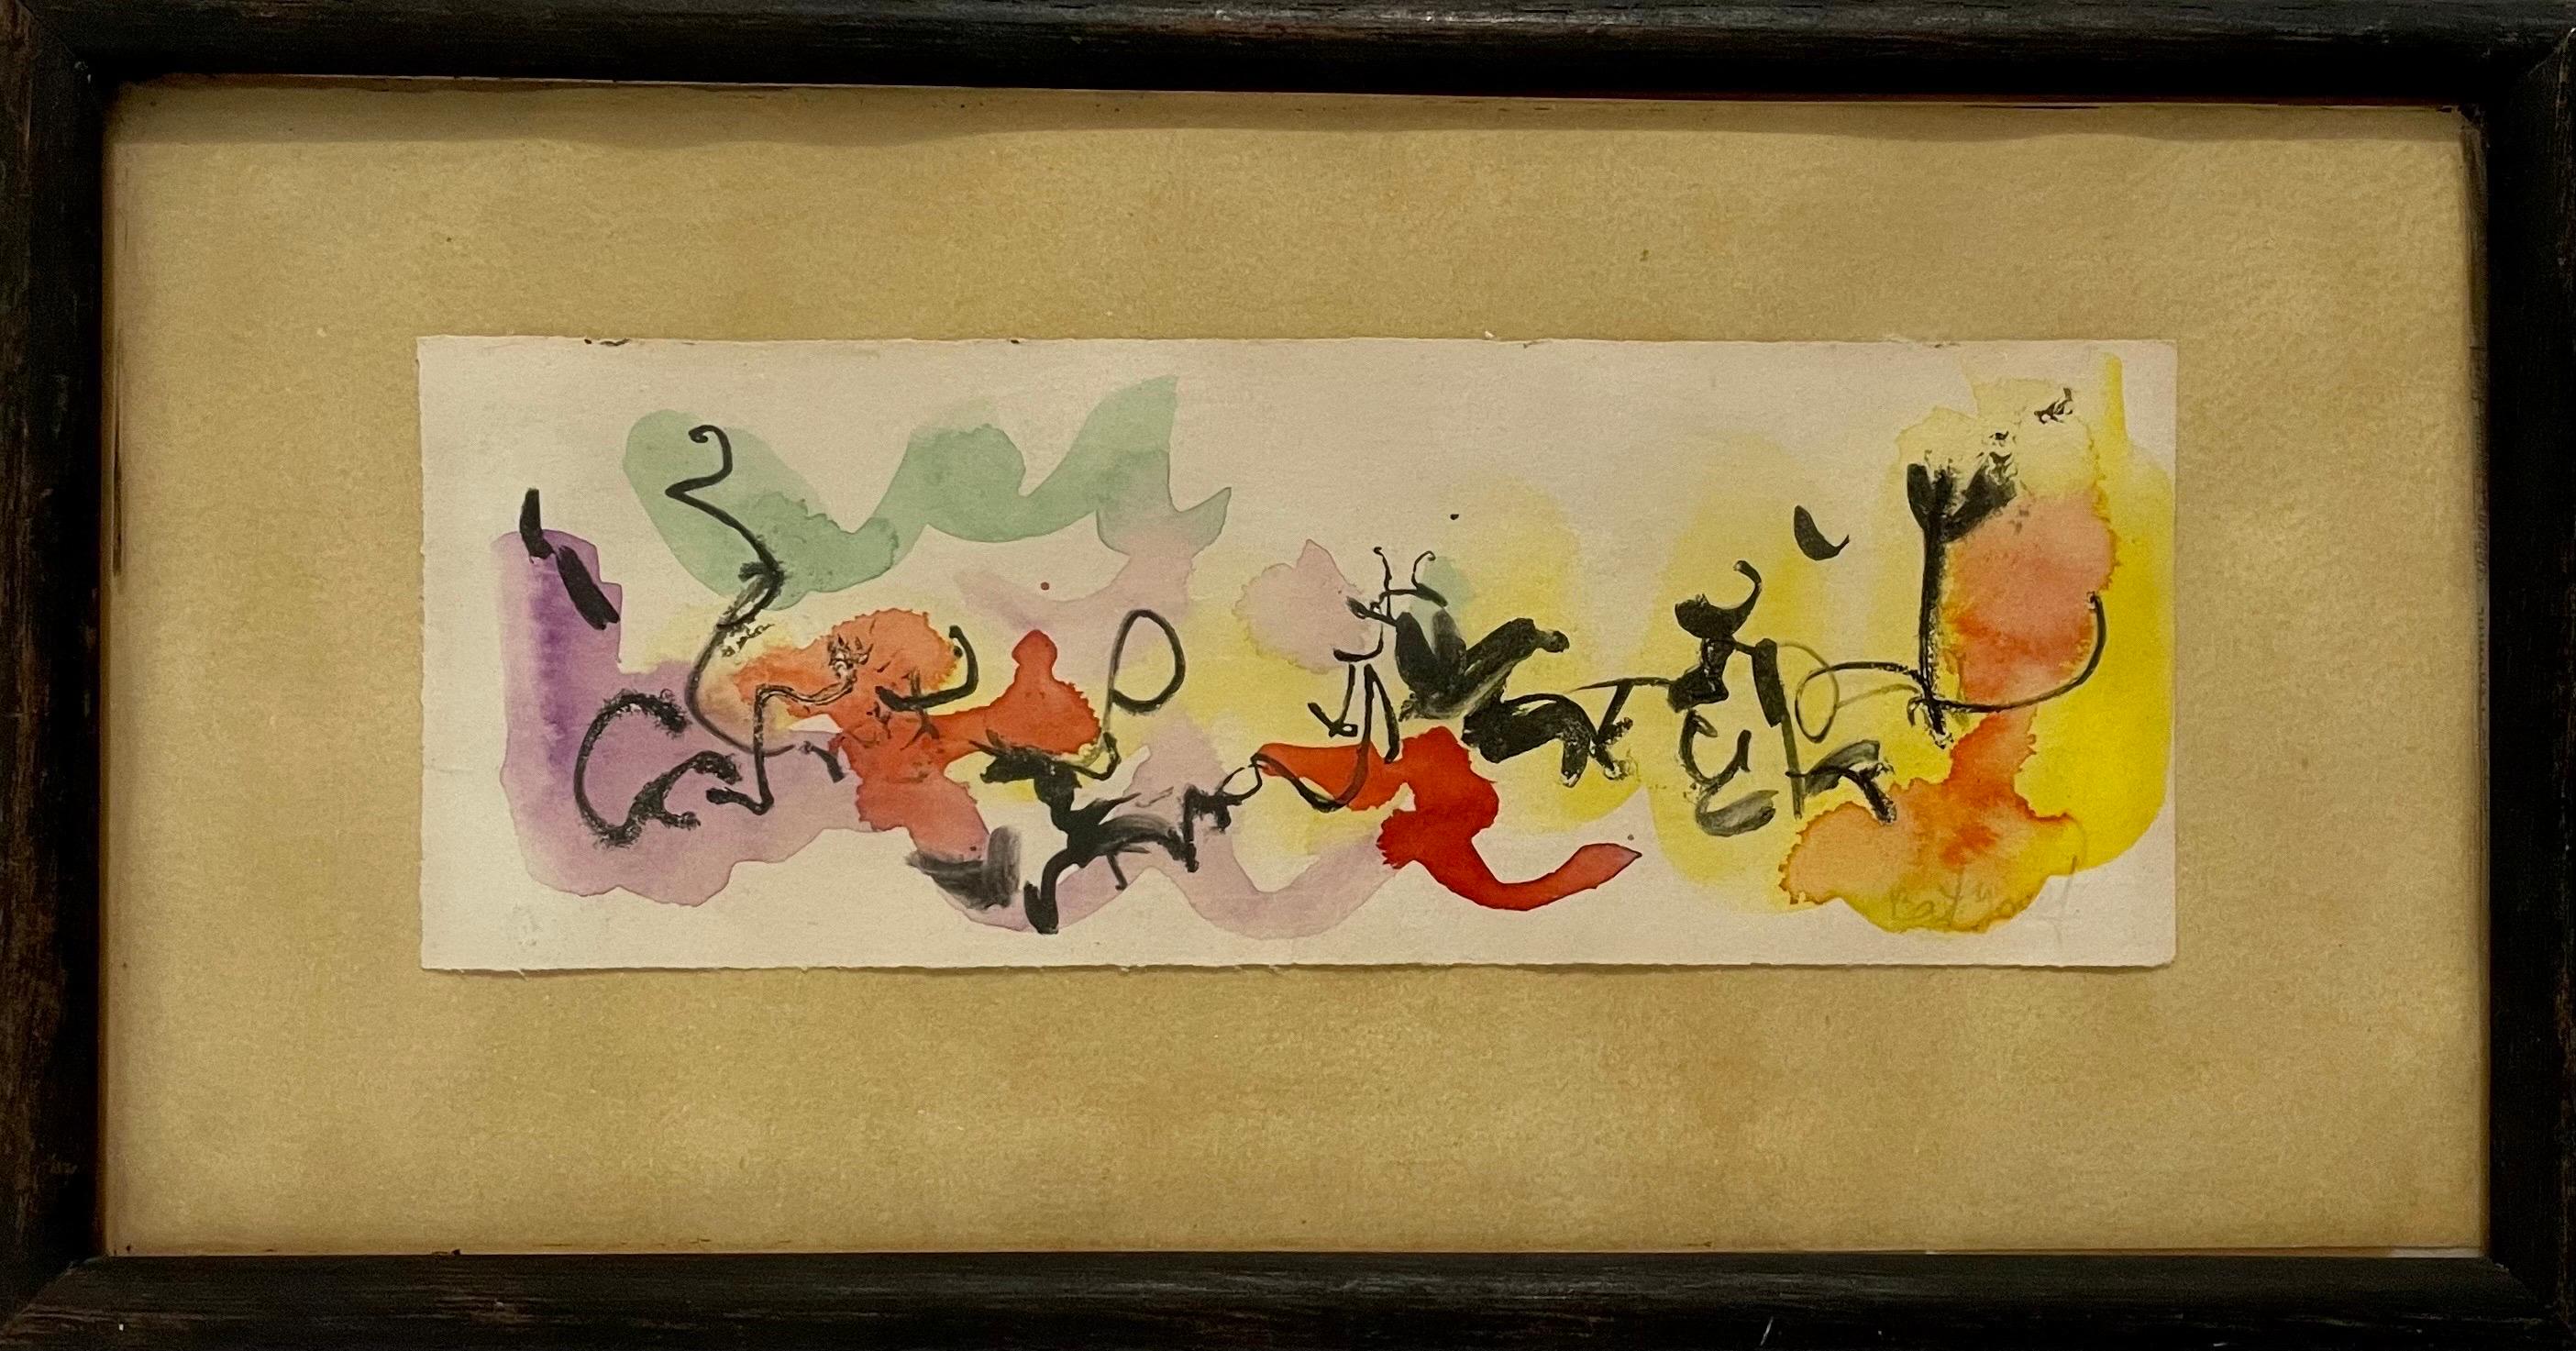 Myriam Bat-Yosef 
Peinture abstraite surréaliste aux formes abstraites colorées et aux nuances dans le style de Joan Miro.
Signé à la main et daté Tel Aviv, 1957.
le cadre mesure 10 X 5.5 la feuille mesure 2.5 X 7 pouces
L'enveloppe du poster de